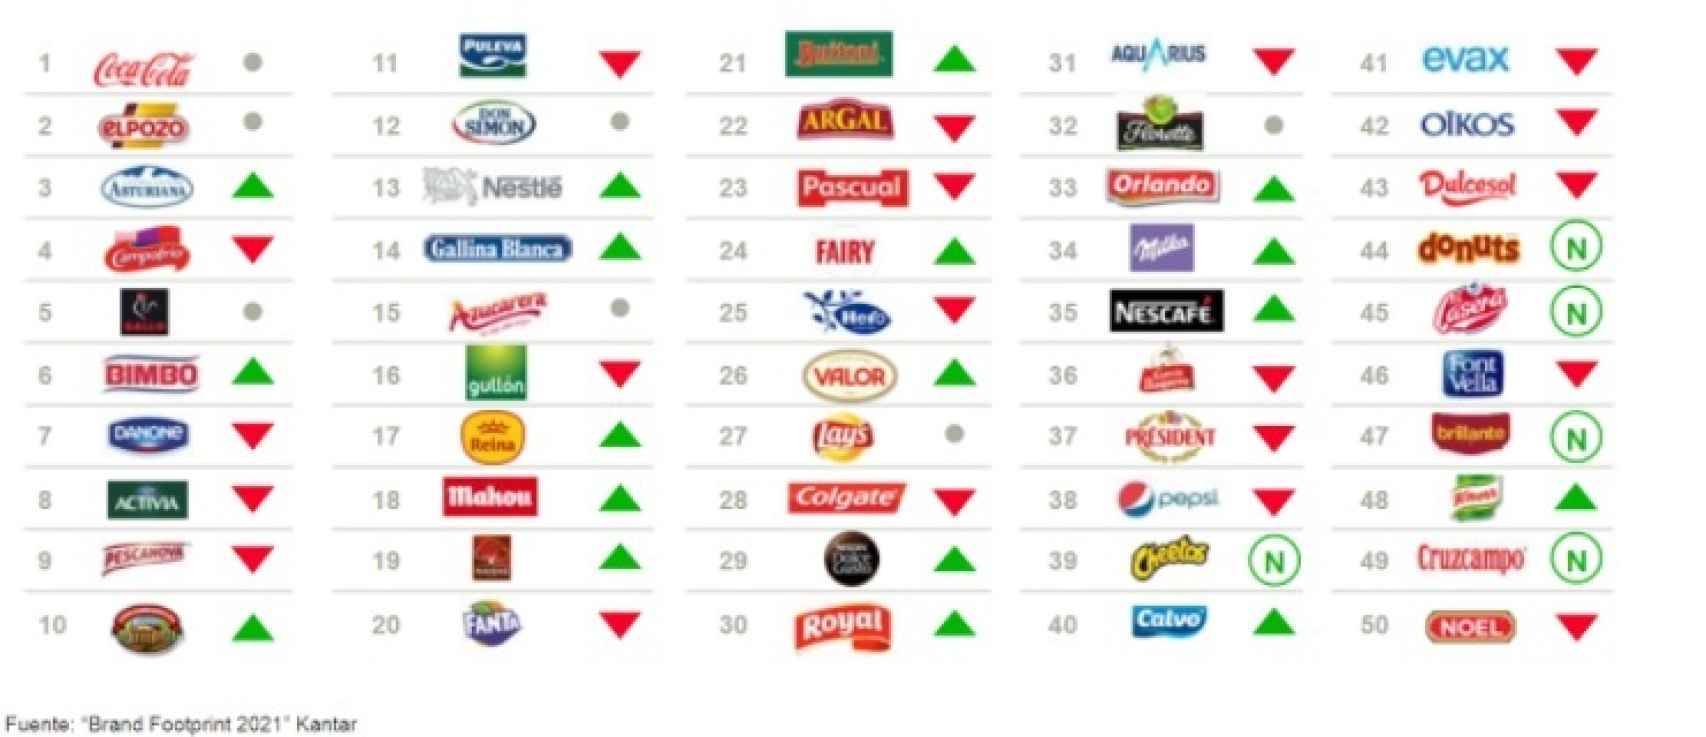 Top 50 de las marcas de consumo en España. Fuente: Kantar.